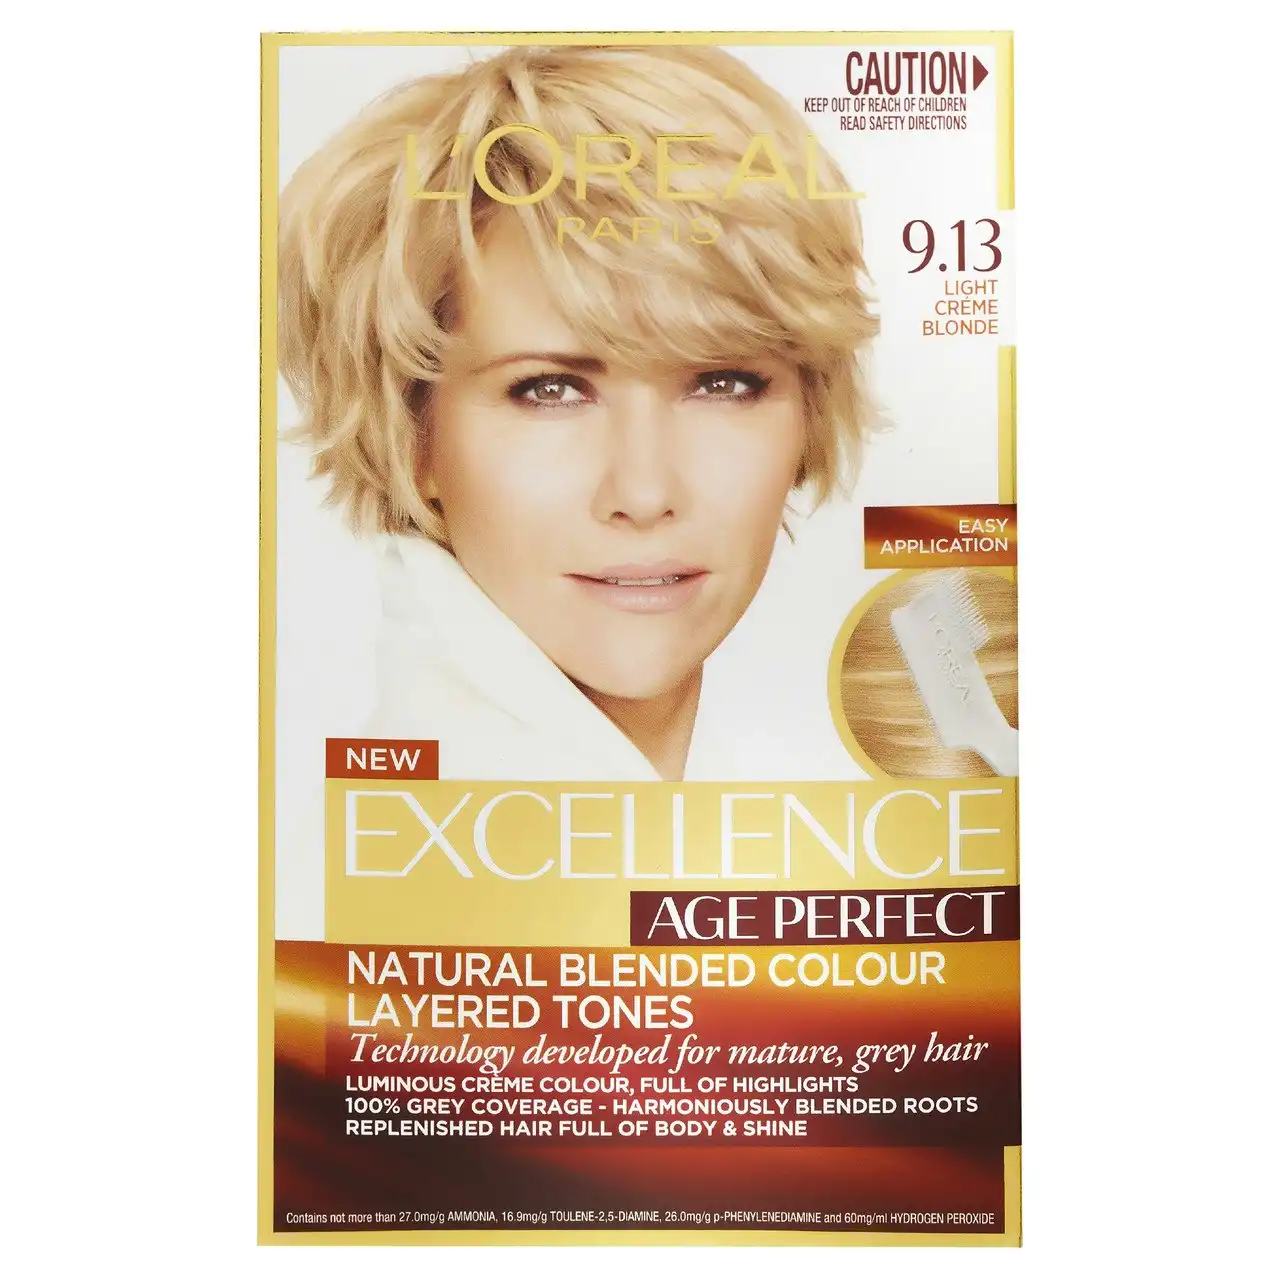 L'Oreal Paris Excellence Age Perfect Permanent Hair Colour, 9.13 Light Creme Blonde